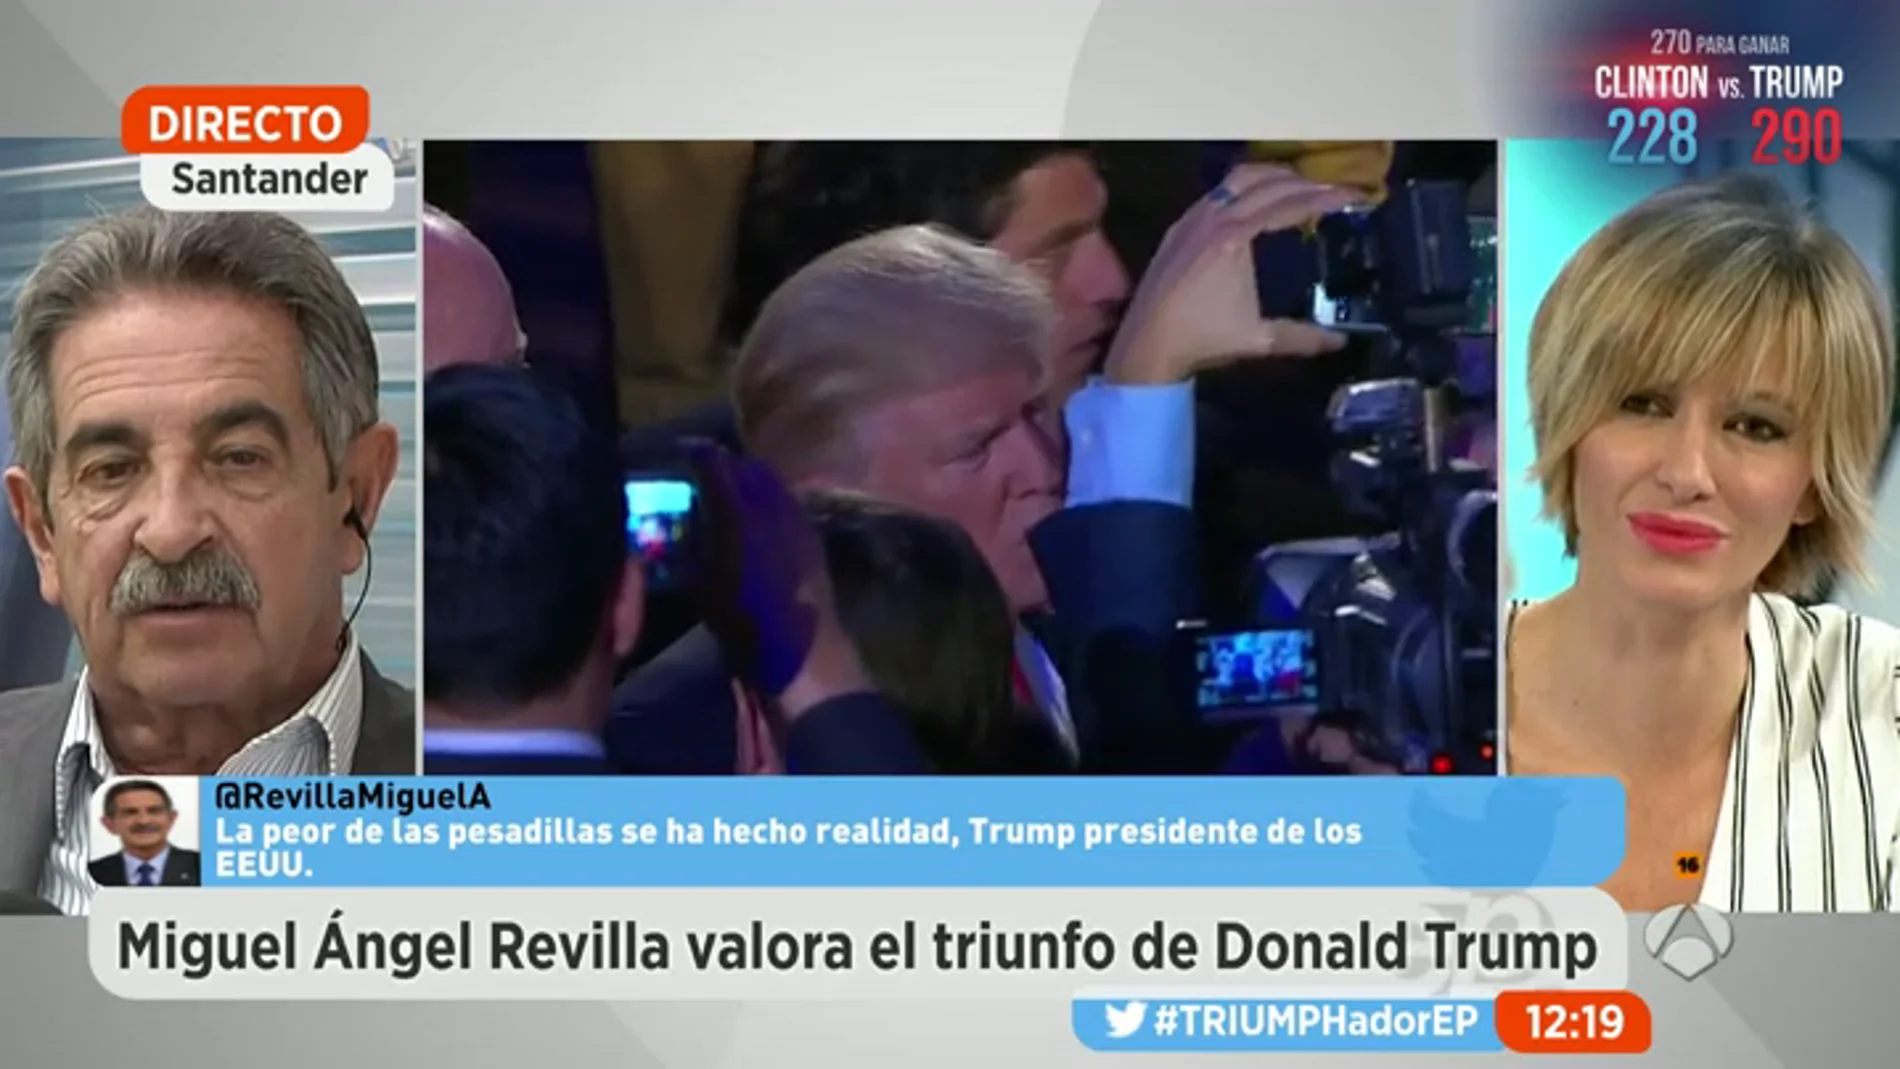 Frame 16.87315 de: Miguel Ángel Revilla: "Lo que viene es terrorífico, a Trump le van a salir imitadores"